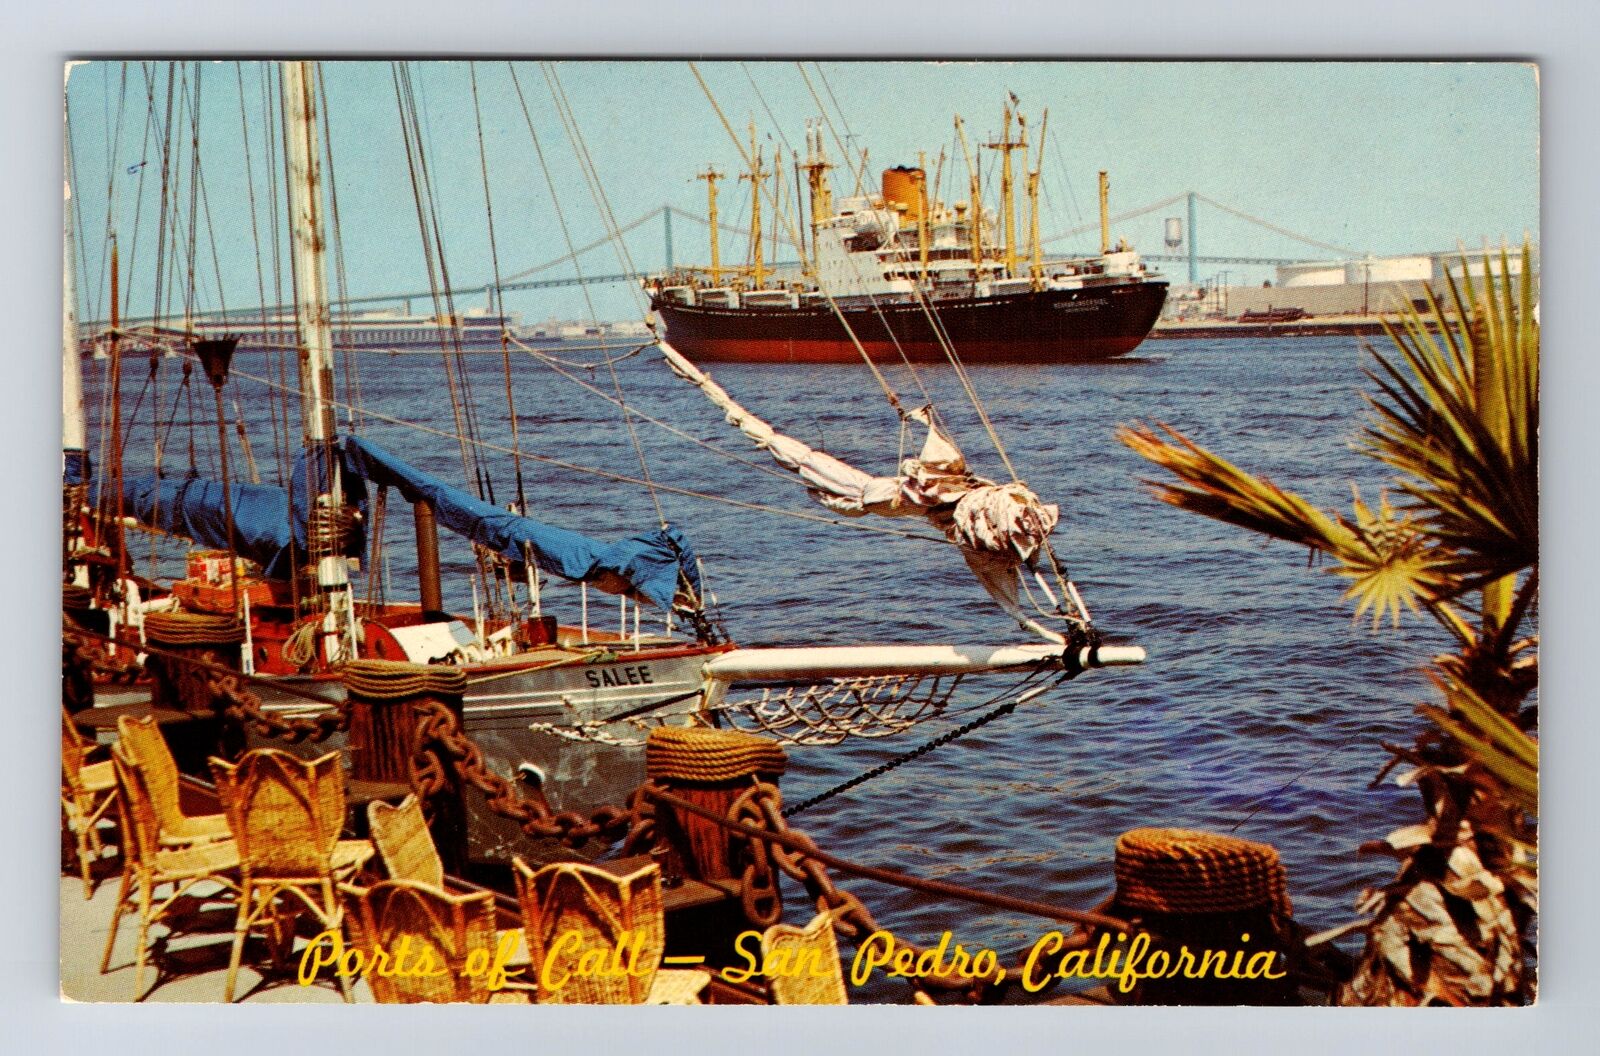 San Pedro CA-California, Ports Of Call Village, Ship At Anchor Vintage Postcard